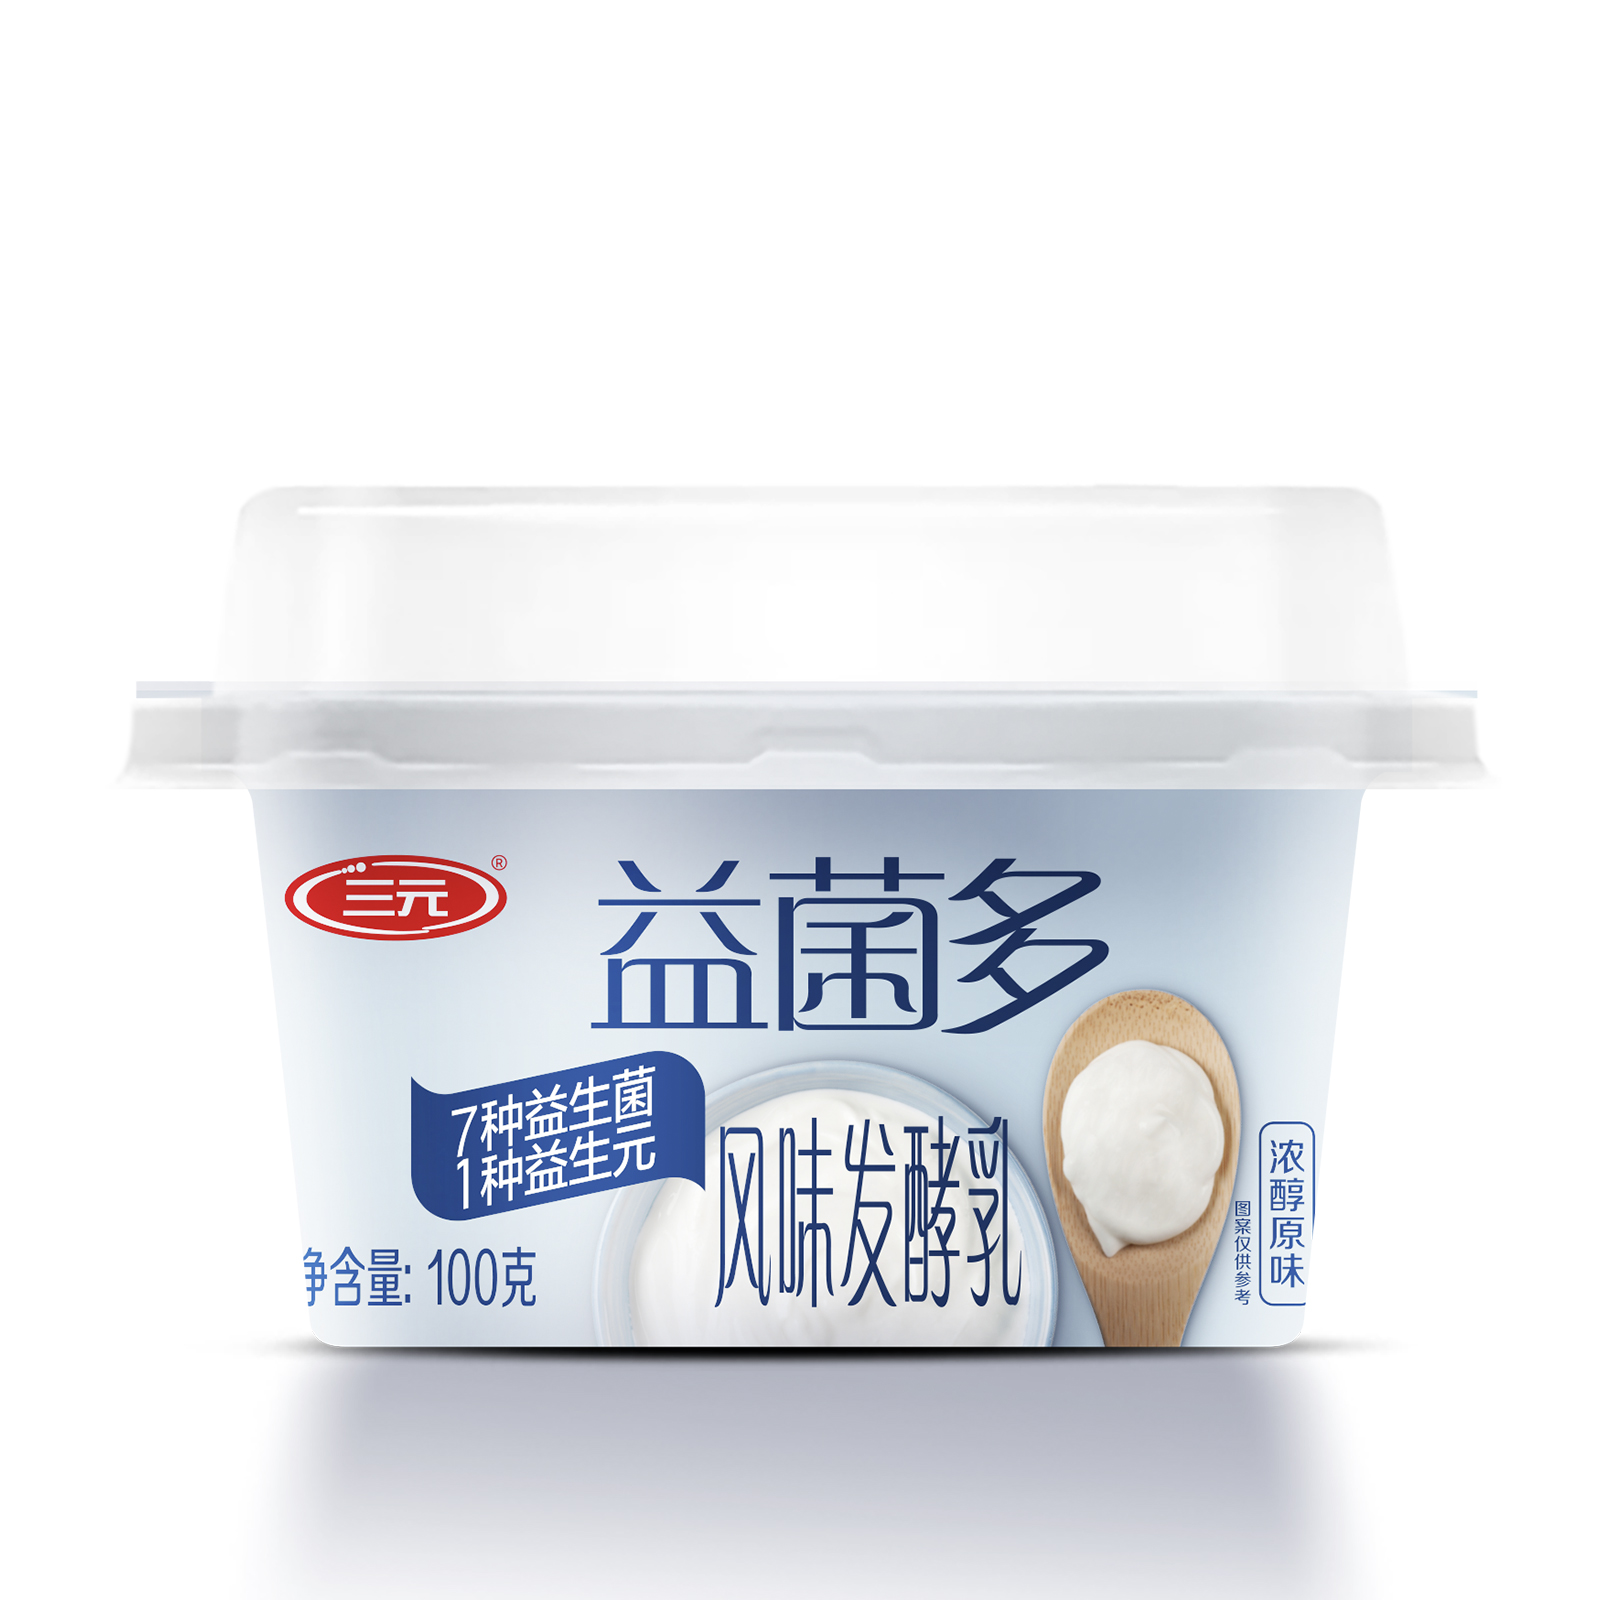 三元益菌多7种复合益生菌杯装低温原味酸奶无添加防腐剂发酵乳 - 图0